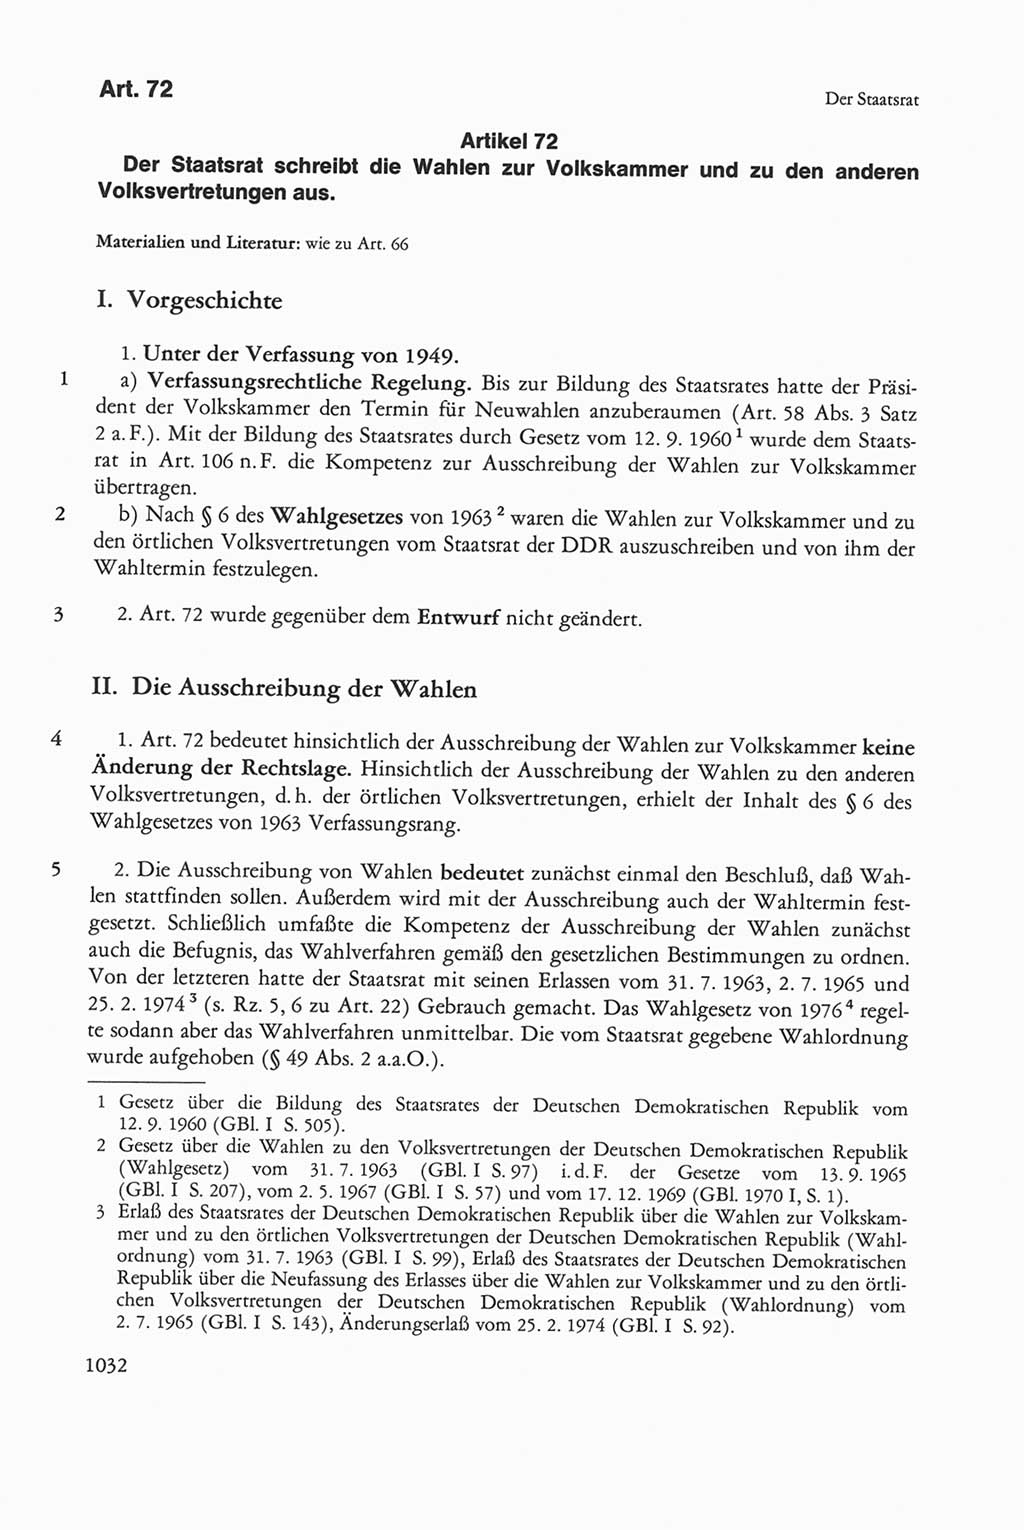 Die sozialistische Verfassung der Deutschen Demokratischen Republik (DDR), Kommentar mit einem Nachtrag 1997, Seite 1032 (Soz. Verf. DDR Komm. Nachtr. 1997, S. 1032)